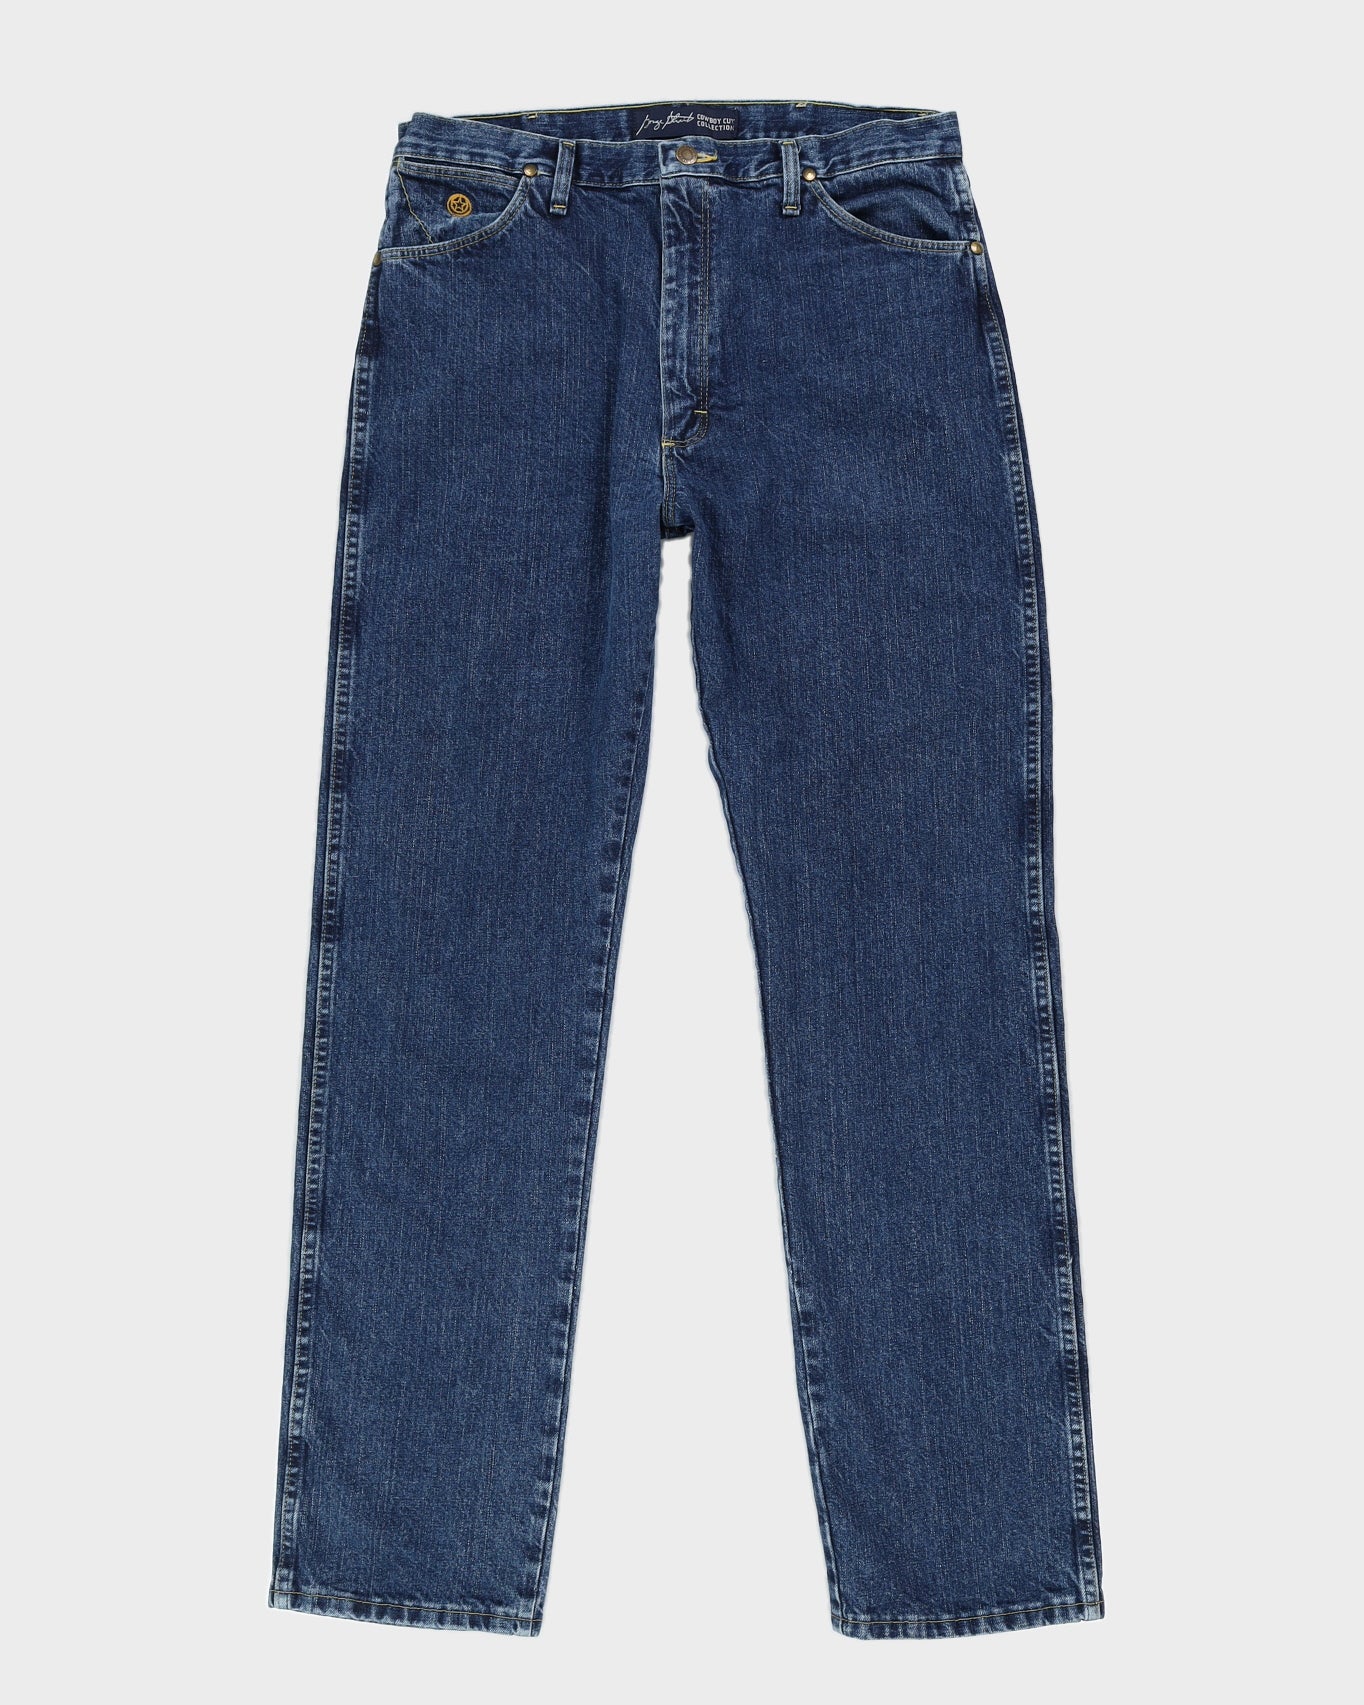 Vintage 90s Wrangler Dark Wash Jeans - W36 L36